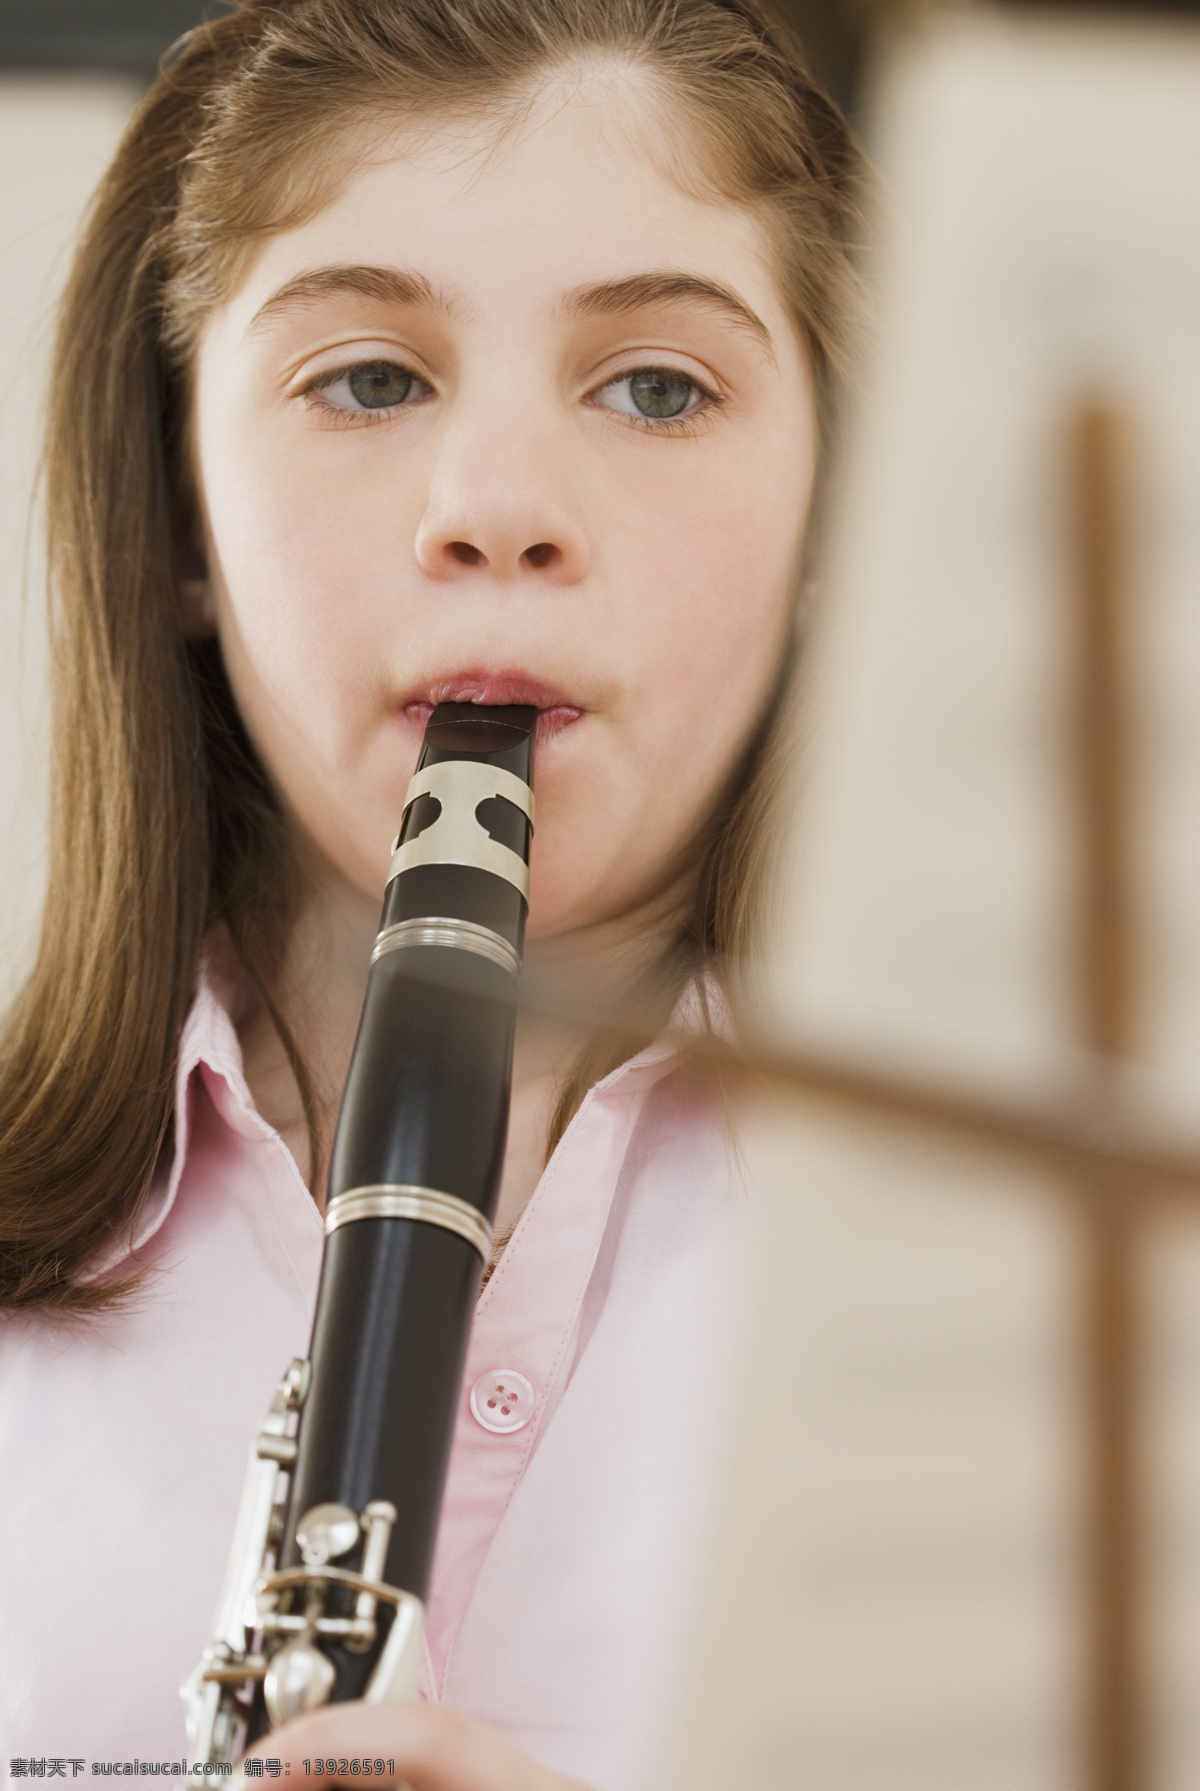 吹奏 音乐 女孩 乐器 声乐 管弦乐 儿童 幼儿 孩子 学生 教育 国外孩子 国外儿童 儿童图片 人物图片